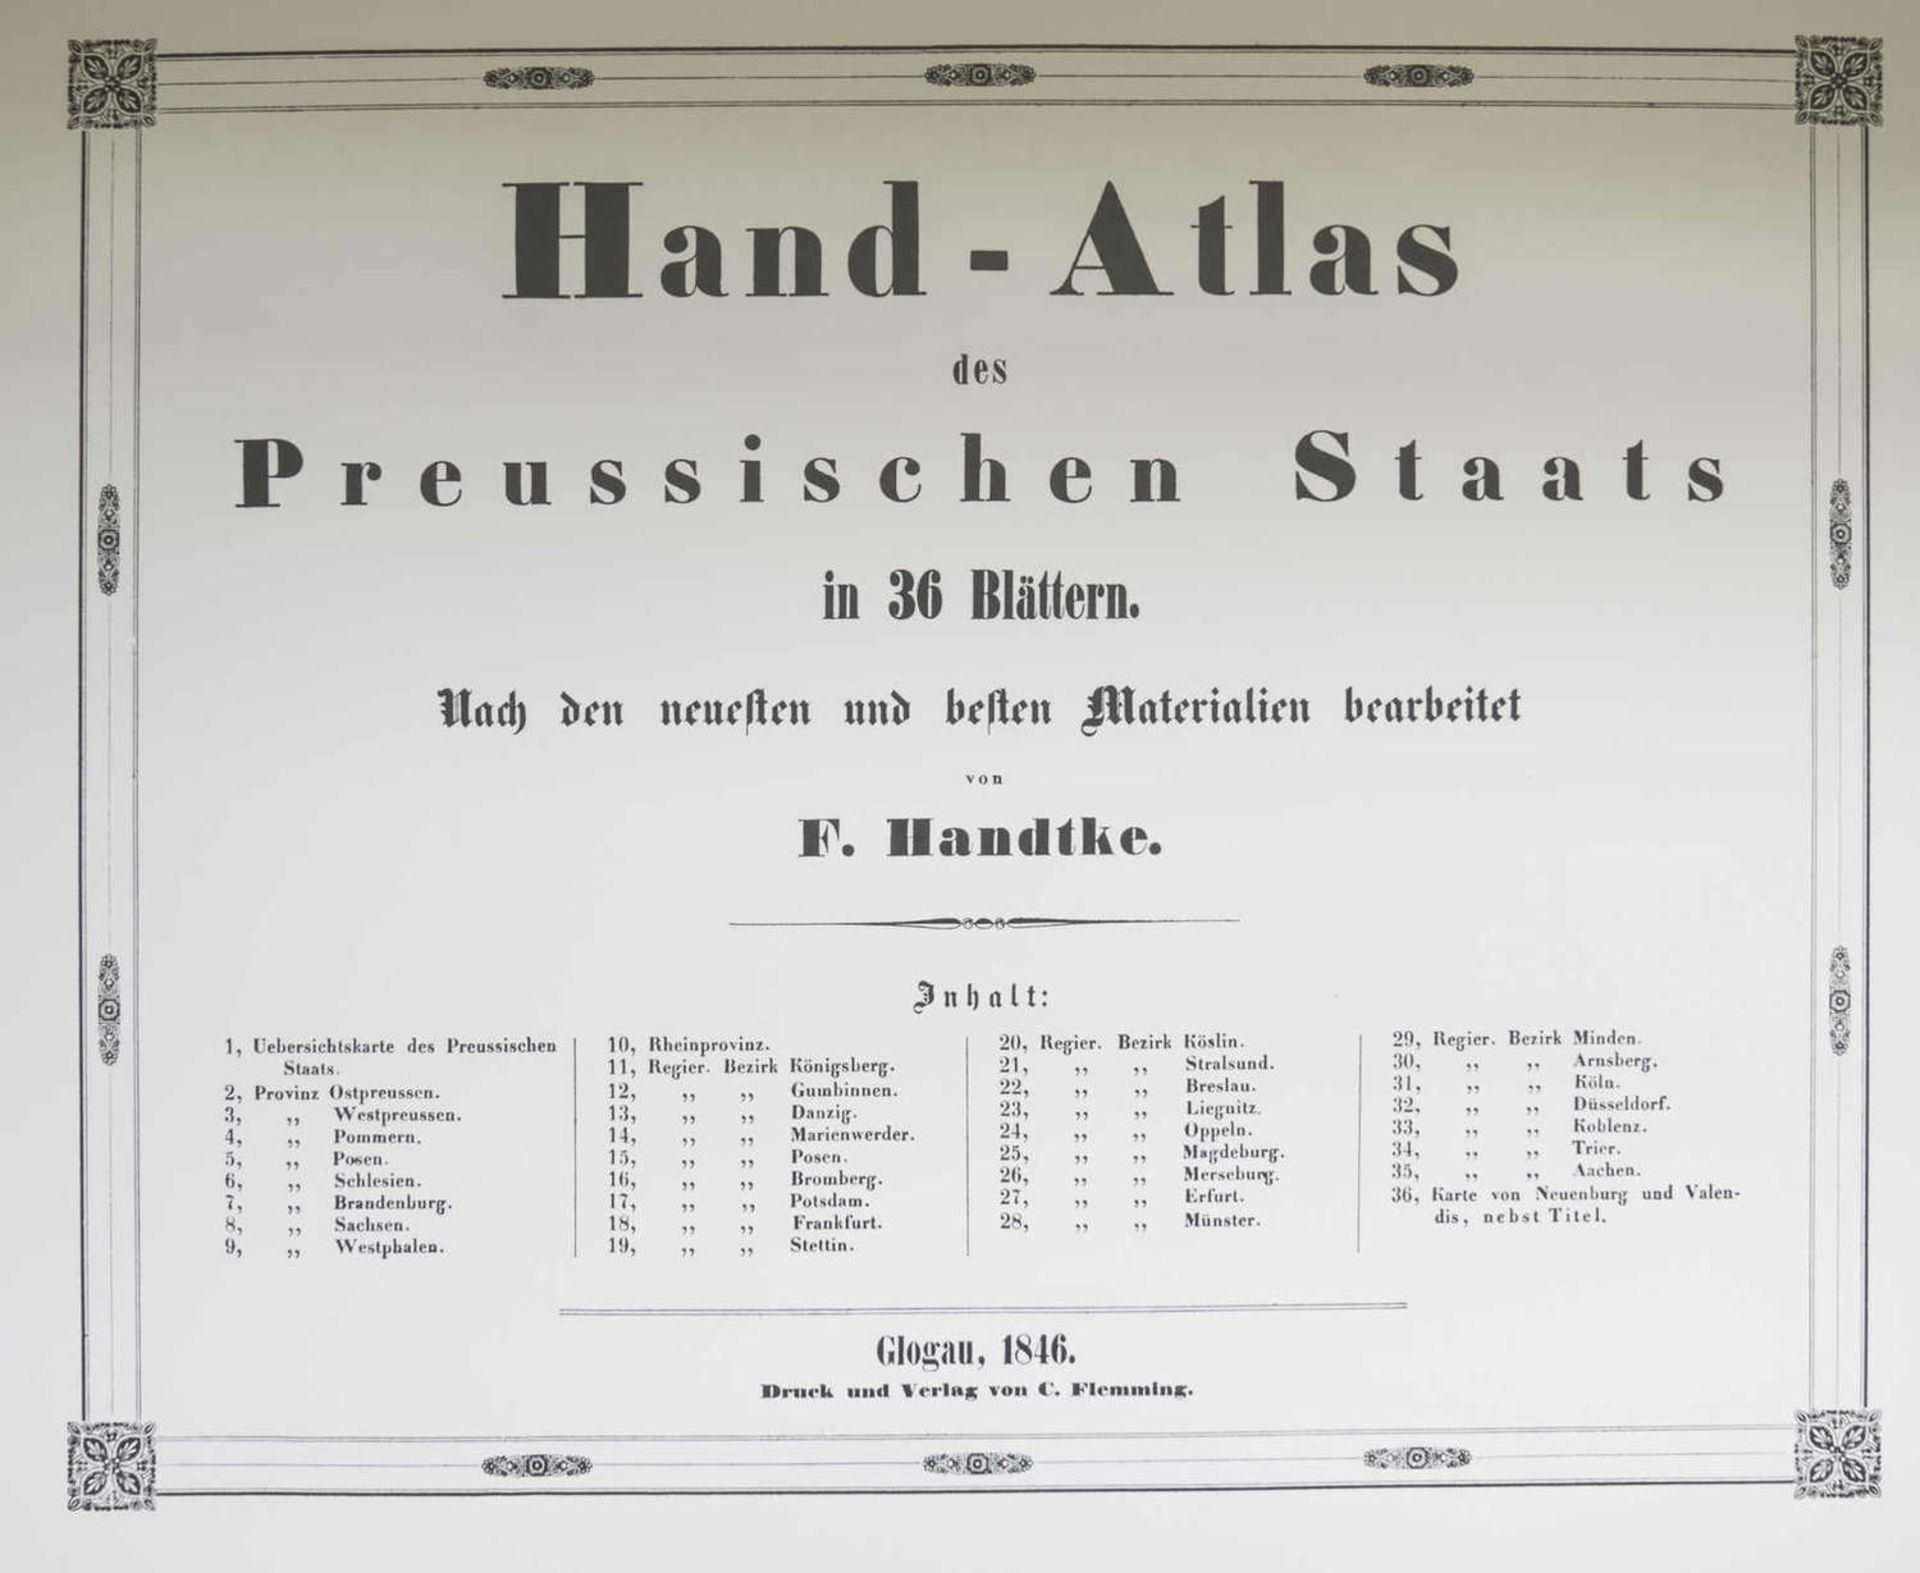 F. Handtke, Handatlas des Preußischen Staates von 1846, in 36 Blättern. Glogau 1846, Druck und Ve - Image 2 of 4